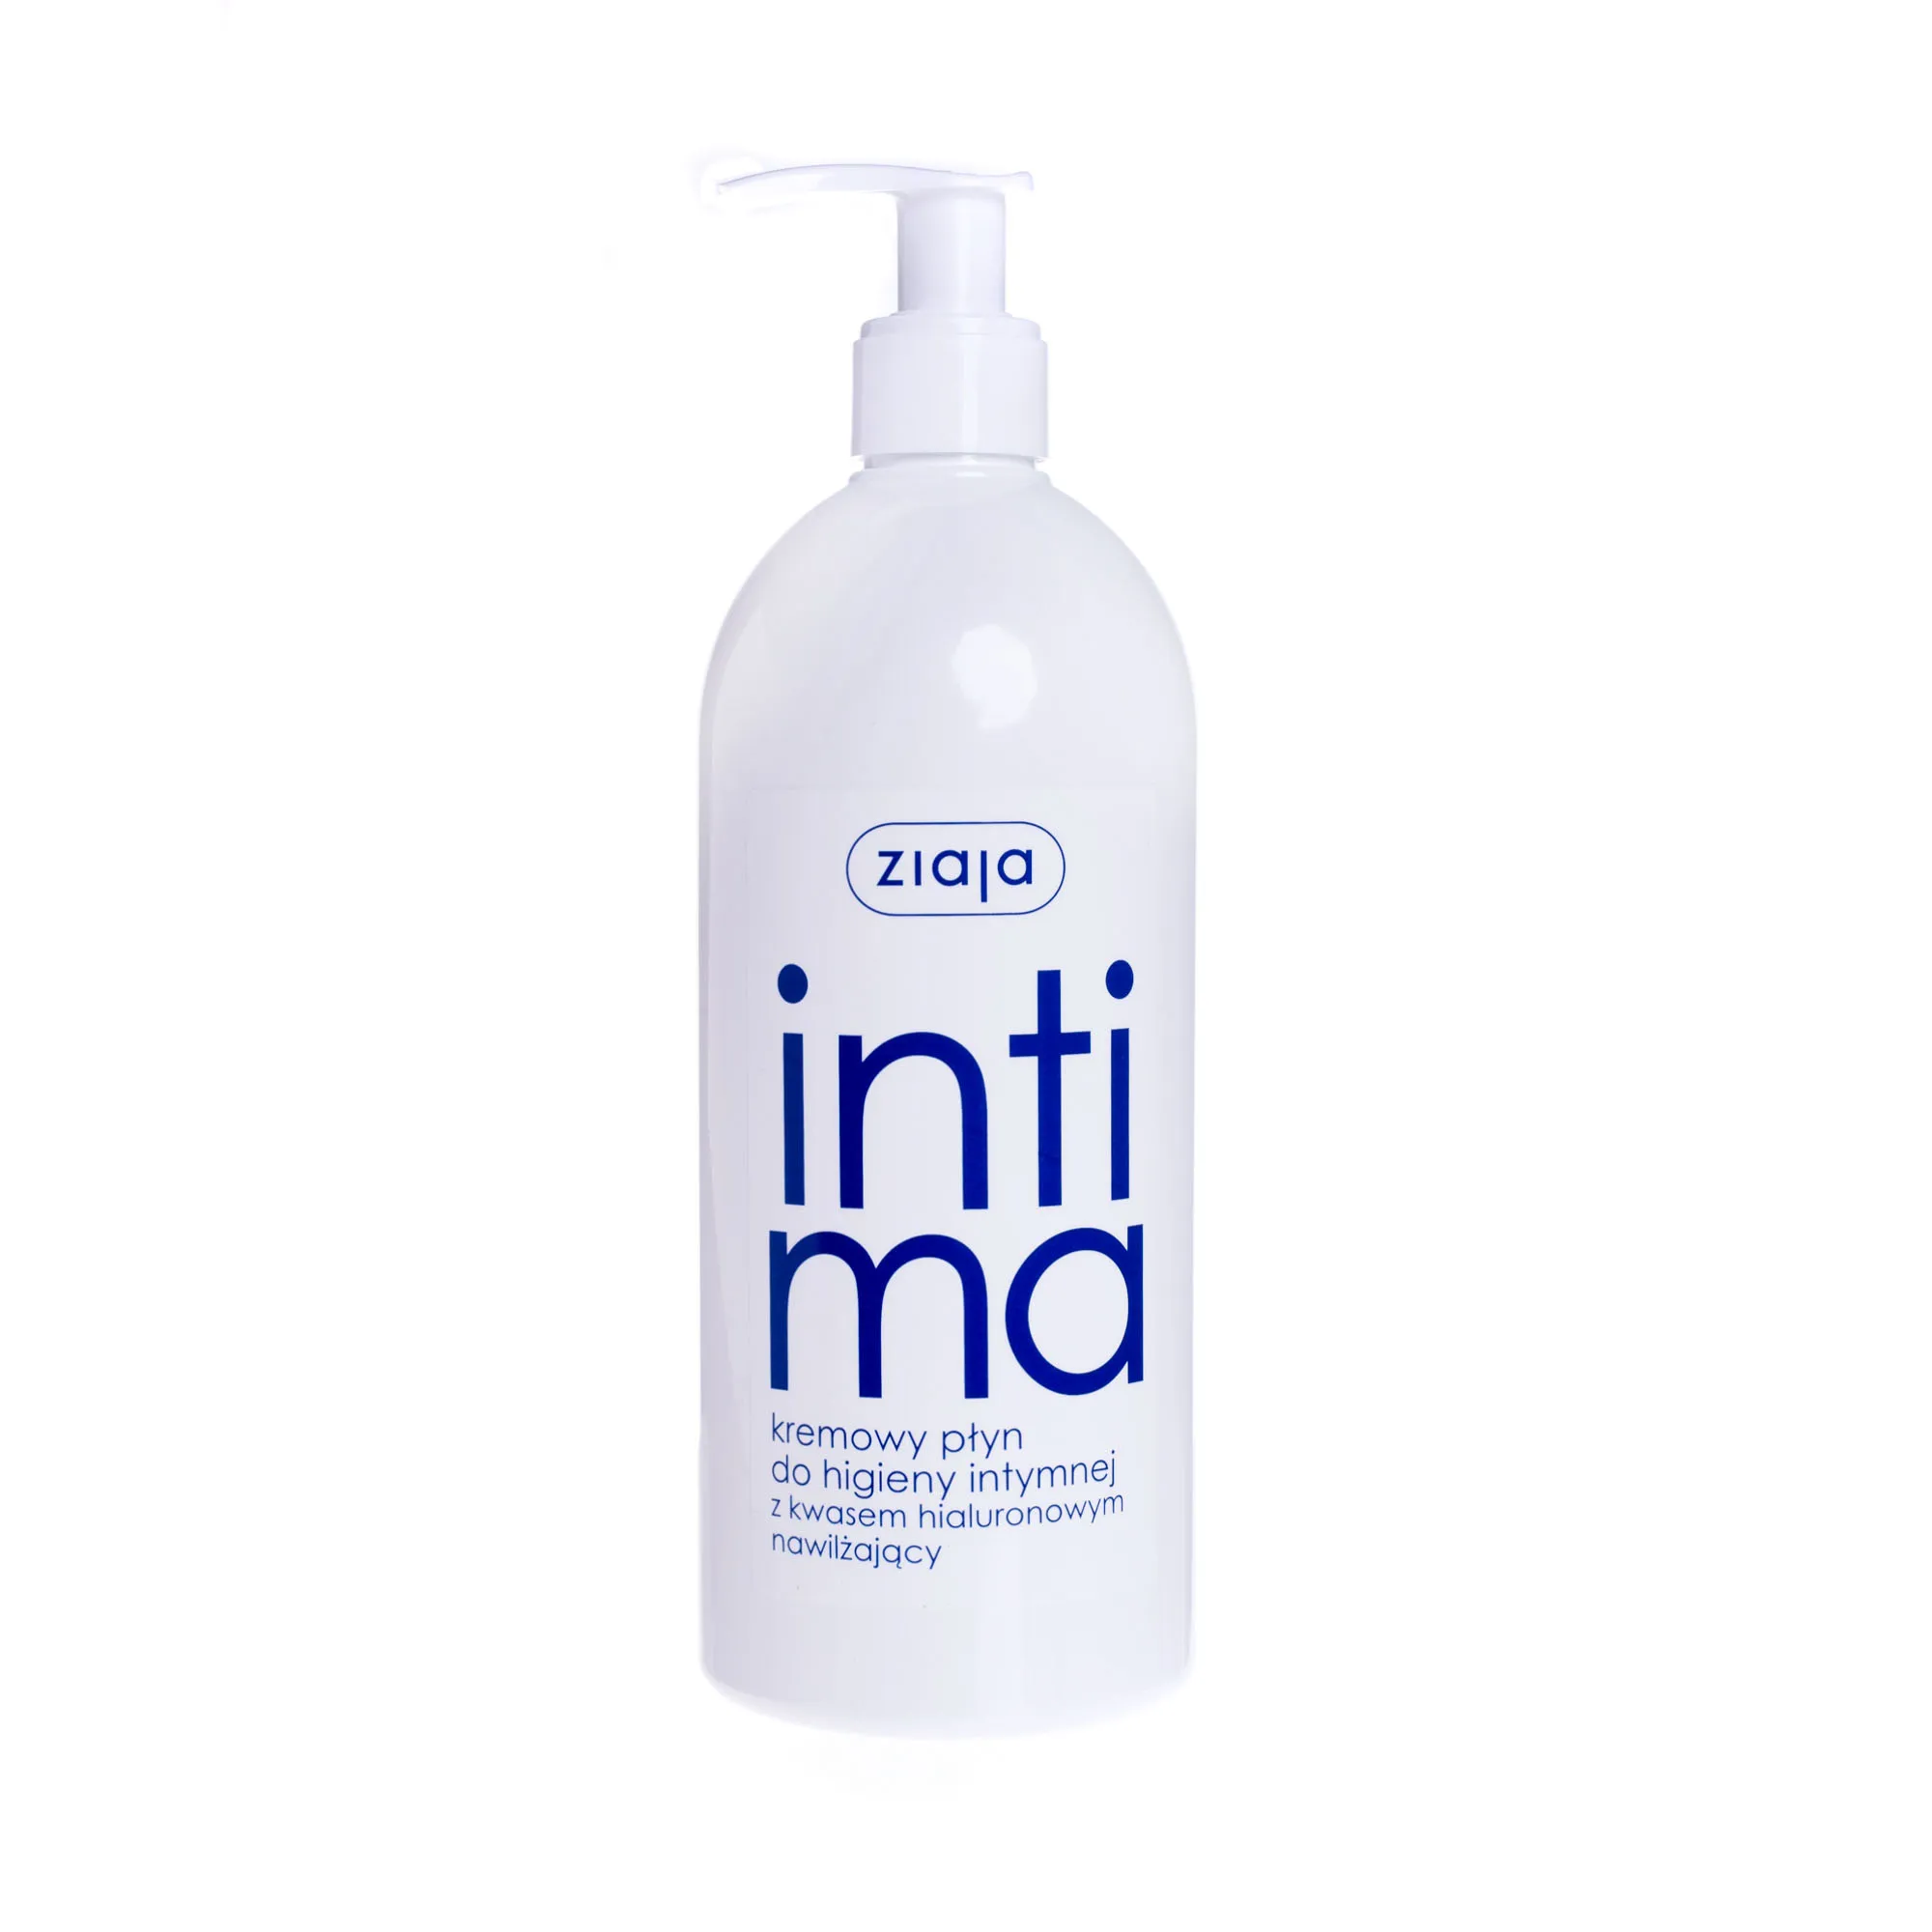 Ziaja intima, kremowy płyn do higieny intymnej z kwasem hialuronowym, 500 ml 